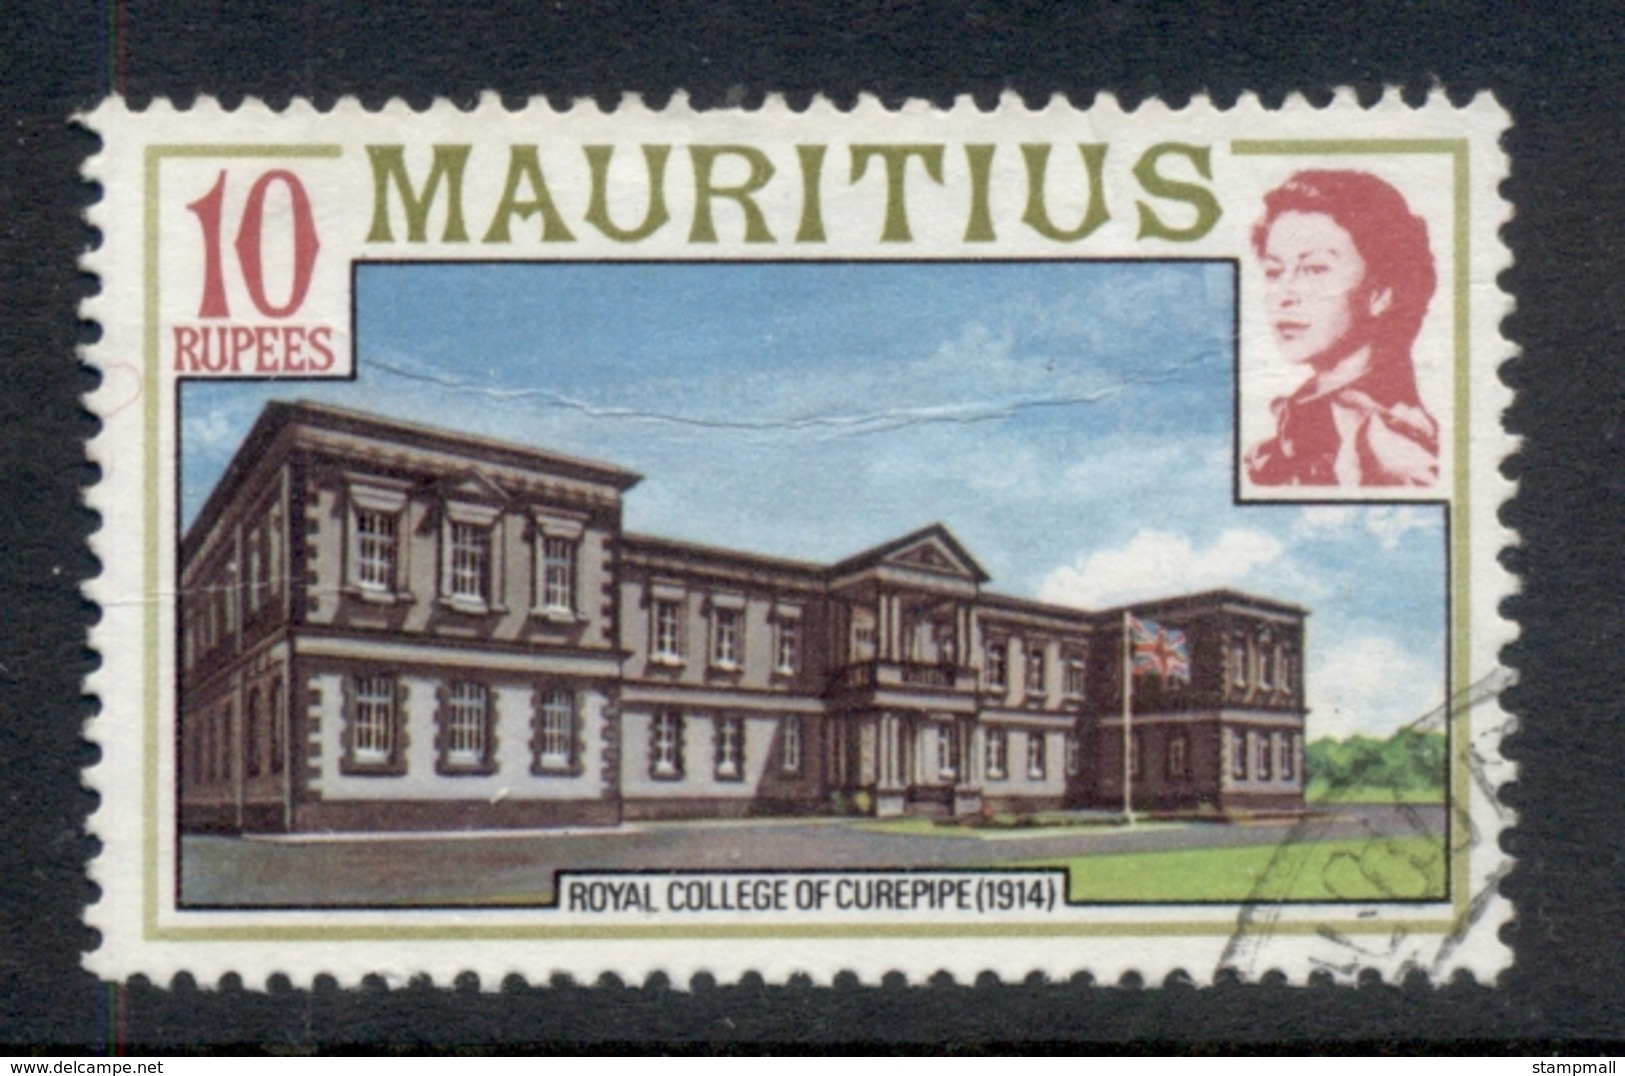 Mauritius 1978 Pictorial Carepipe College 10r FU - Mauritius (1968-...)